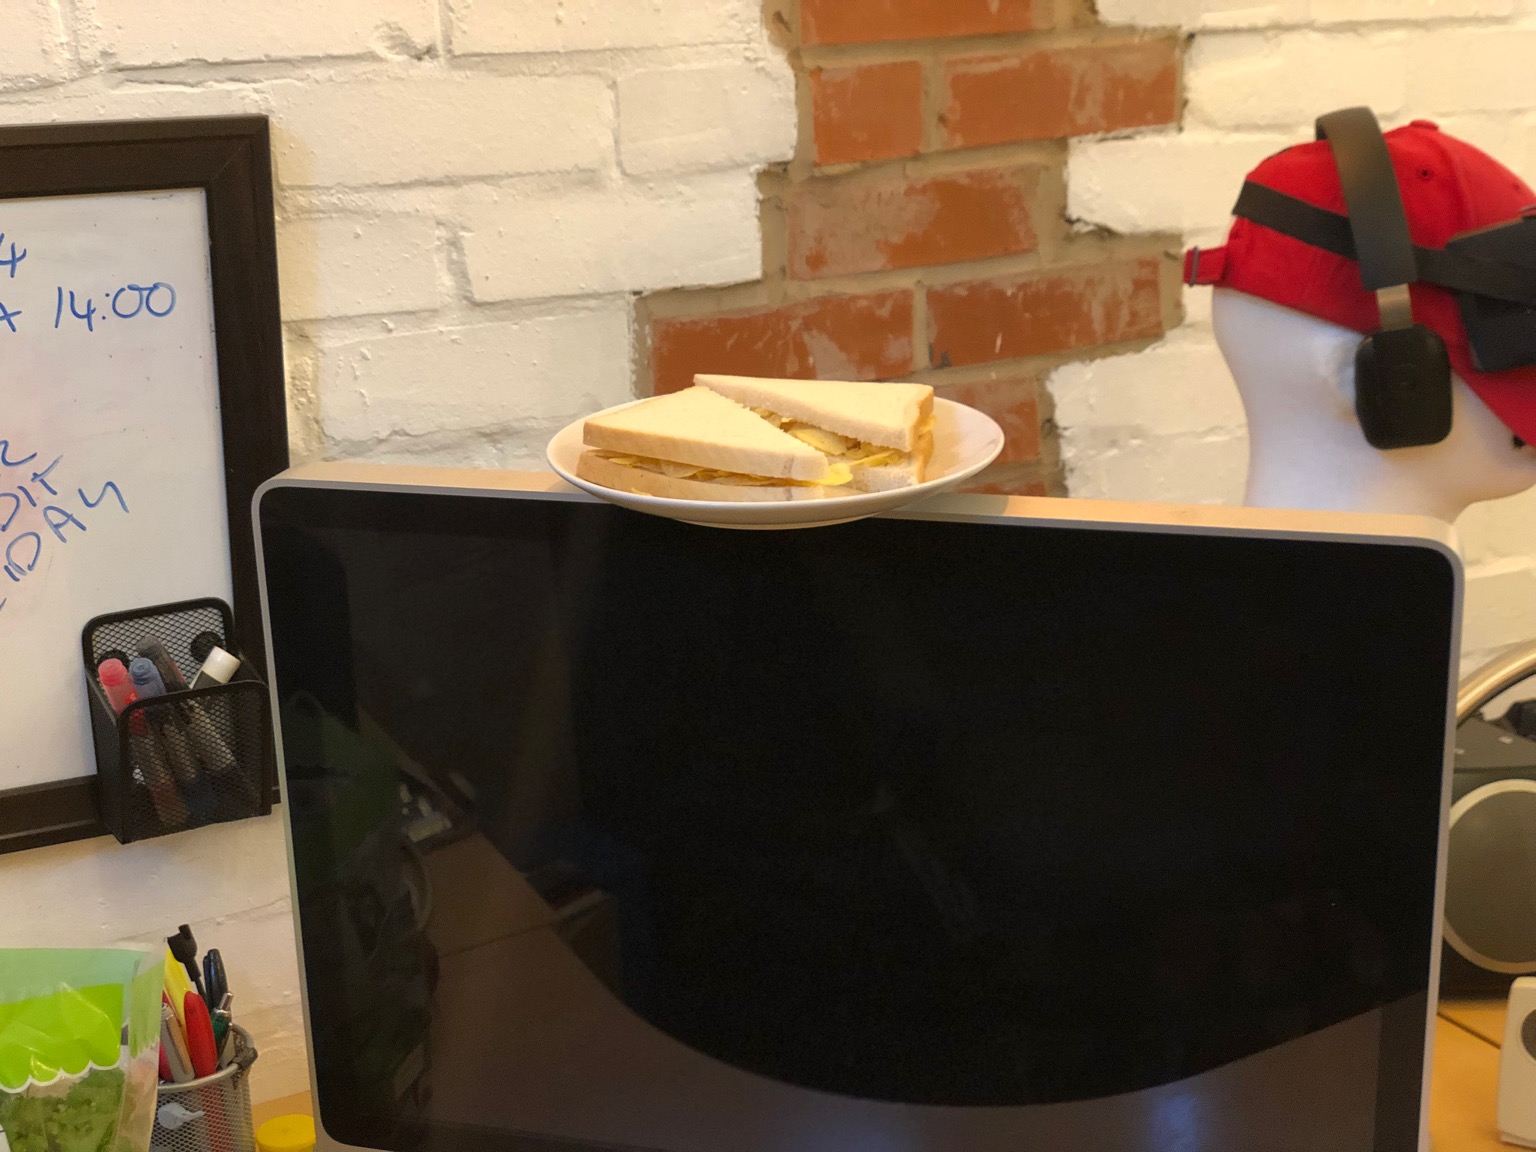 Diagonally-cut crisp sandwich on a monitor